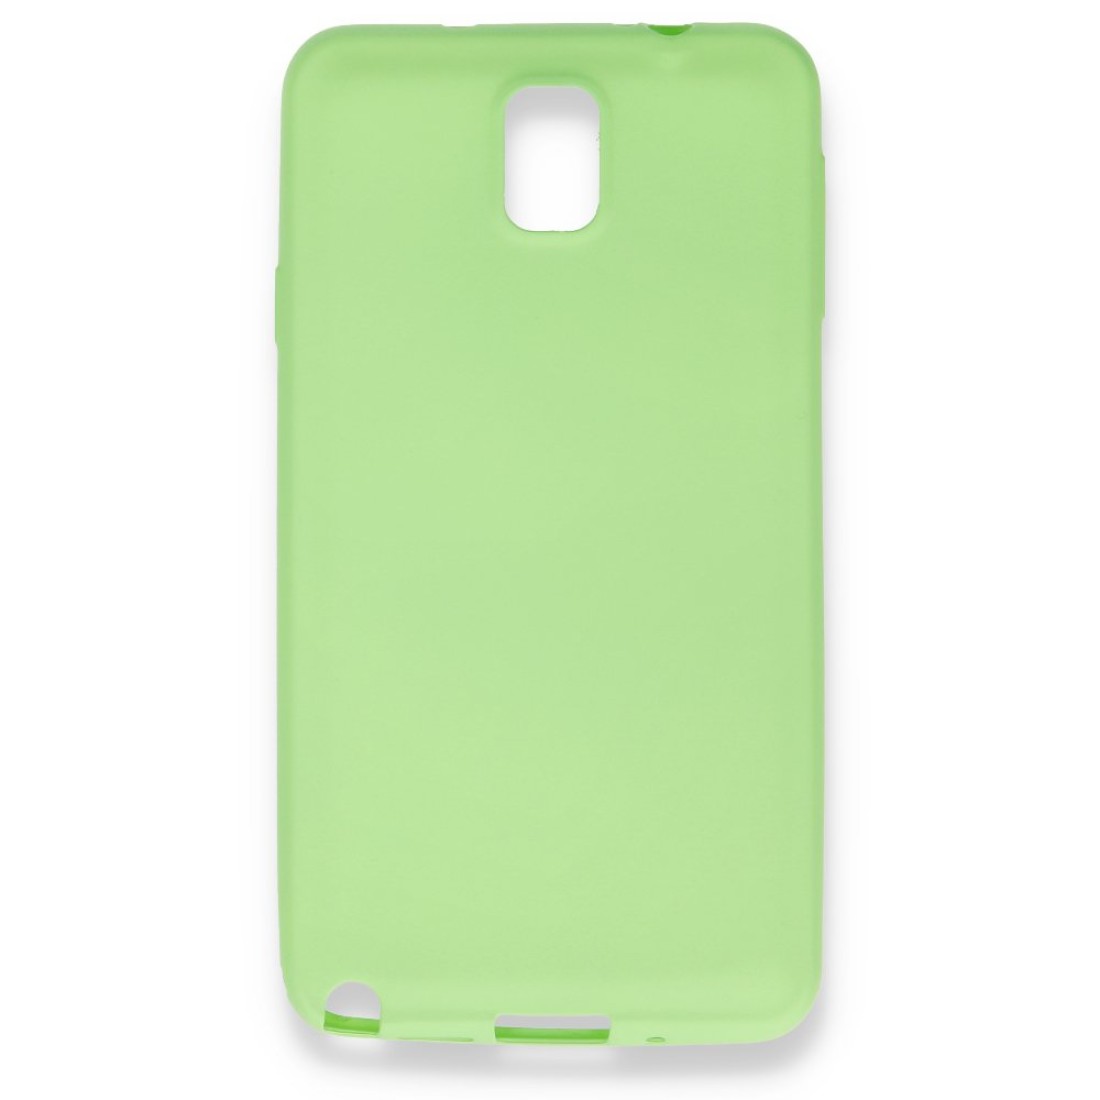 Samsung Galaxy Note 3 / N9000 Kılıf Premium Rubber Silikon - Yeşil